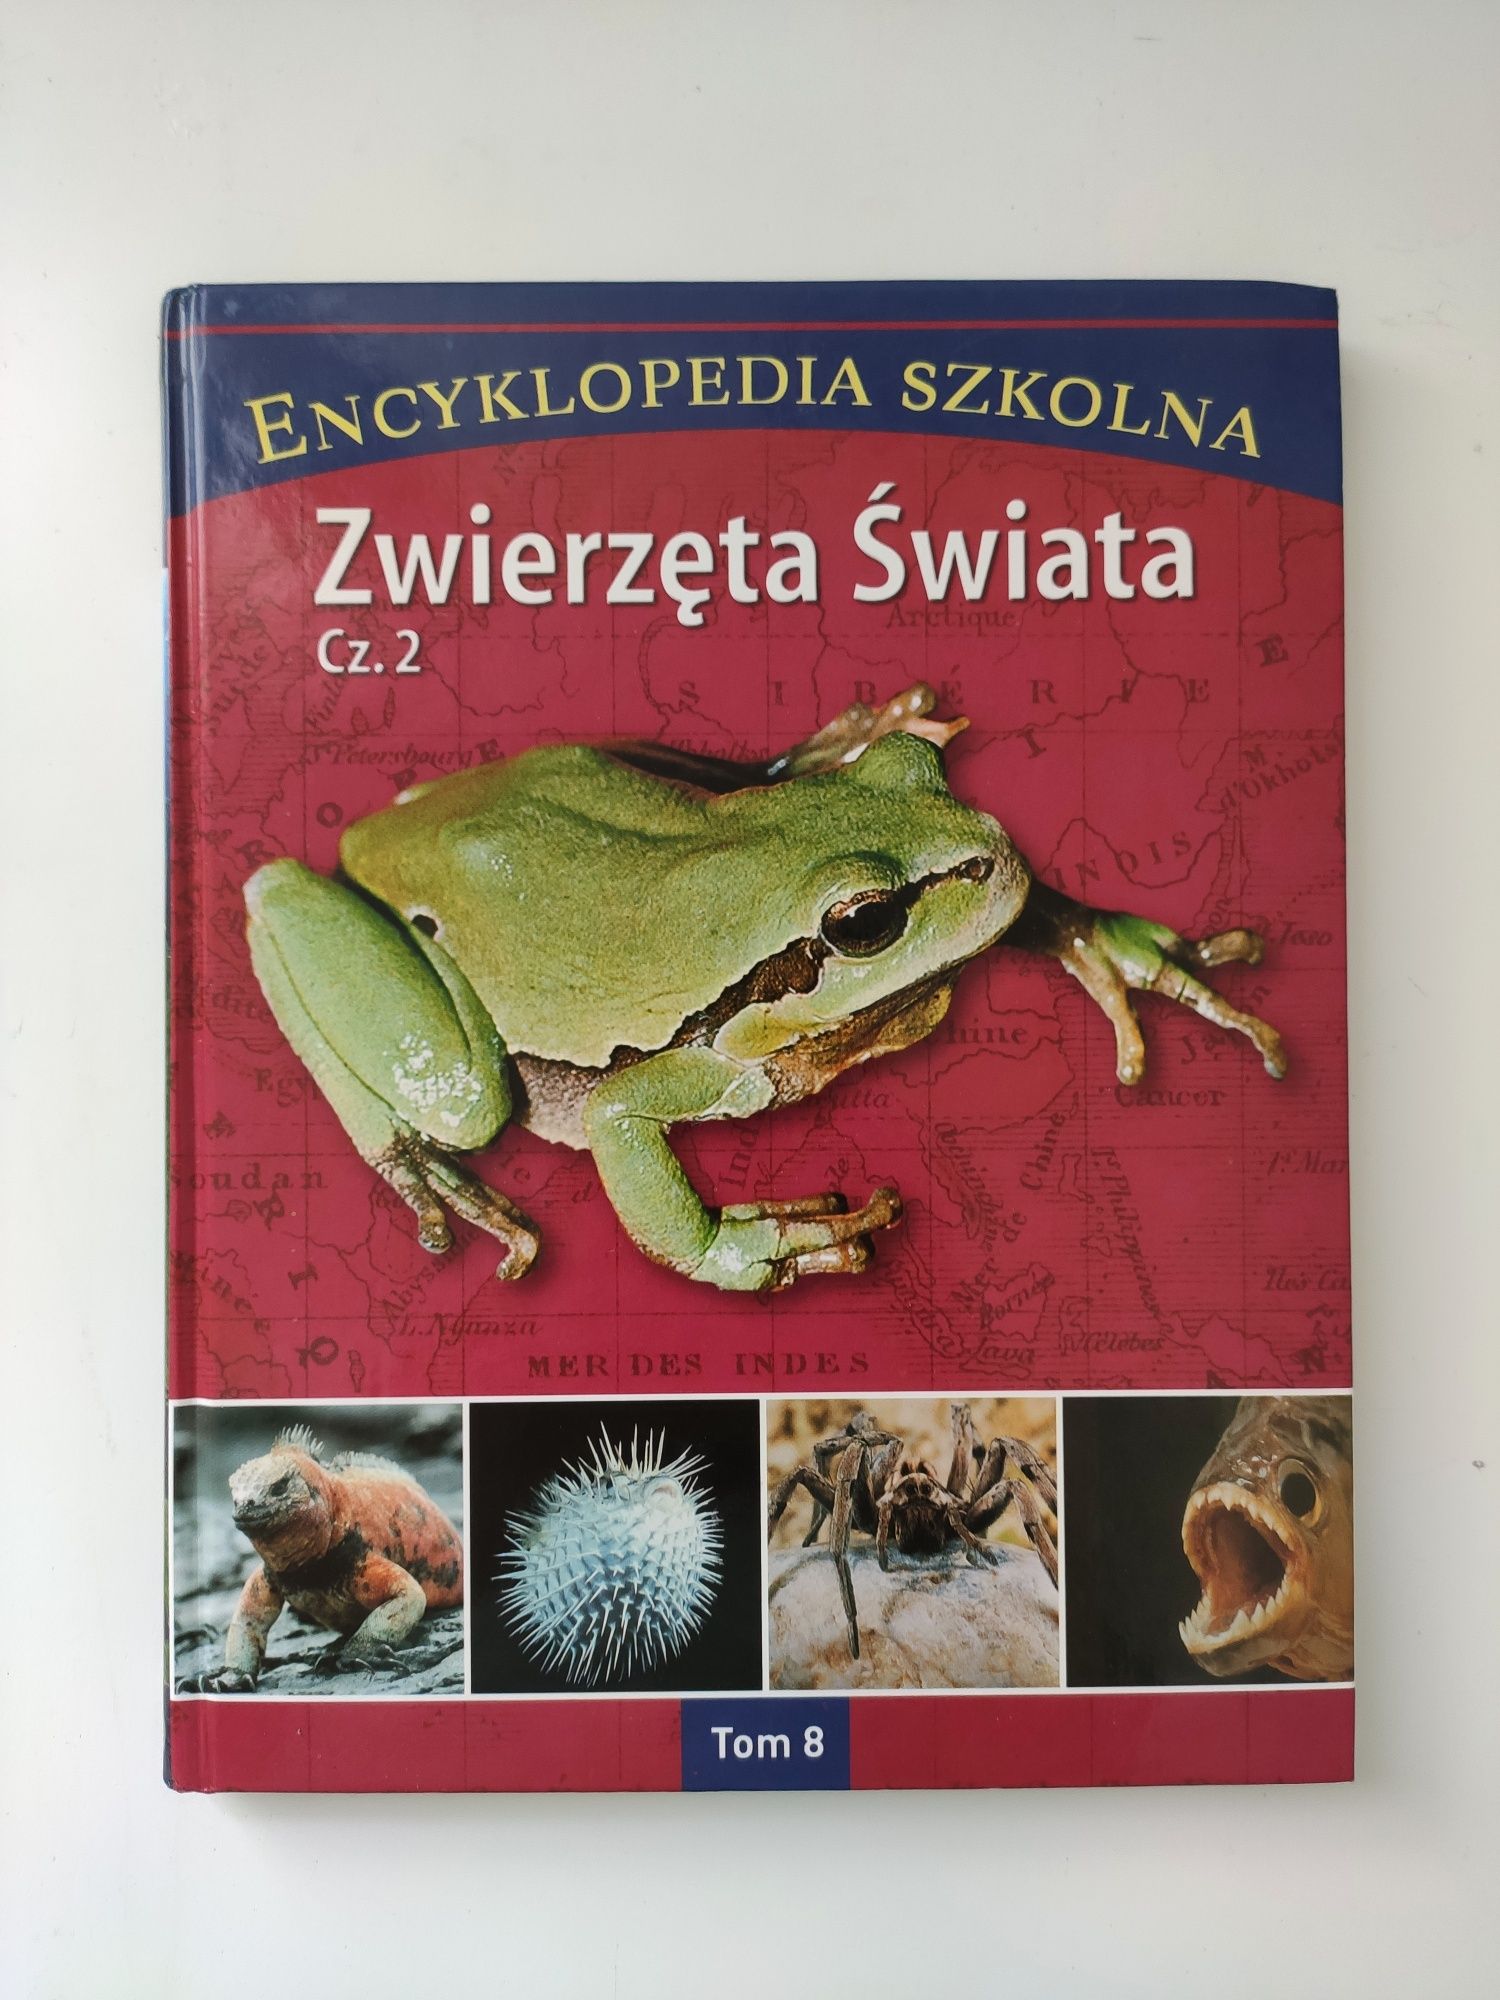 Zwierzęta Świata Cz. 1 i Cz. 2 Encyklopedia Szkolna